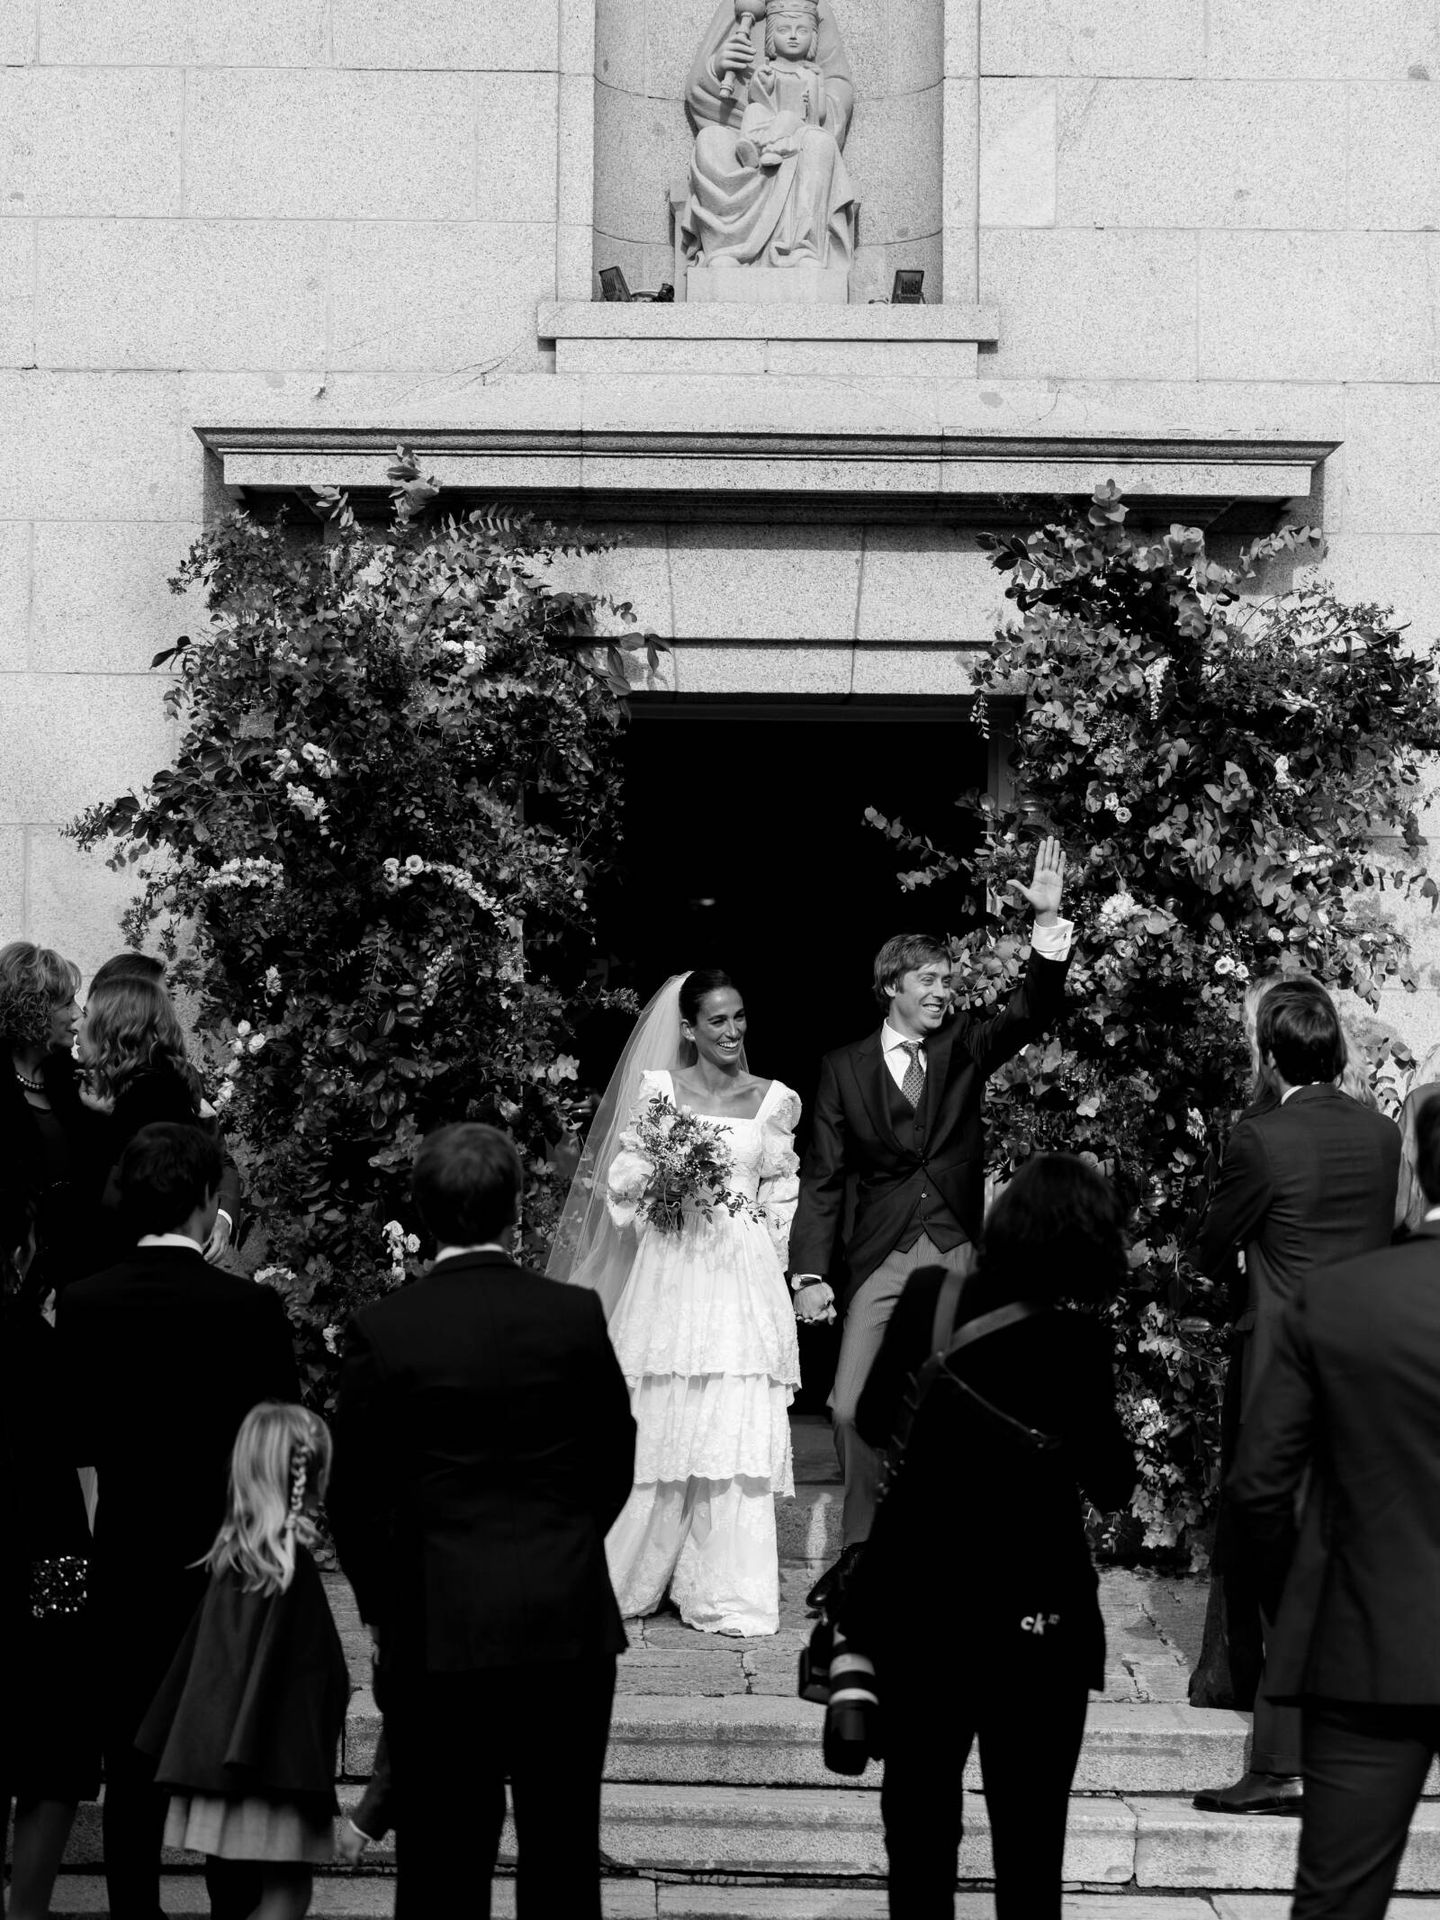 La boda de Sonsoles en Madrid. (Click 10)